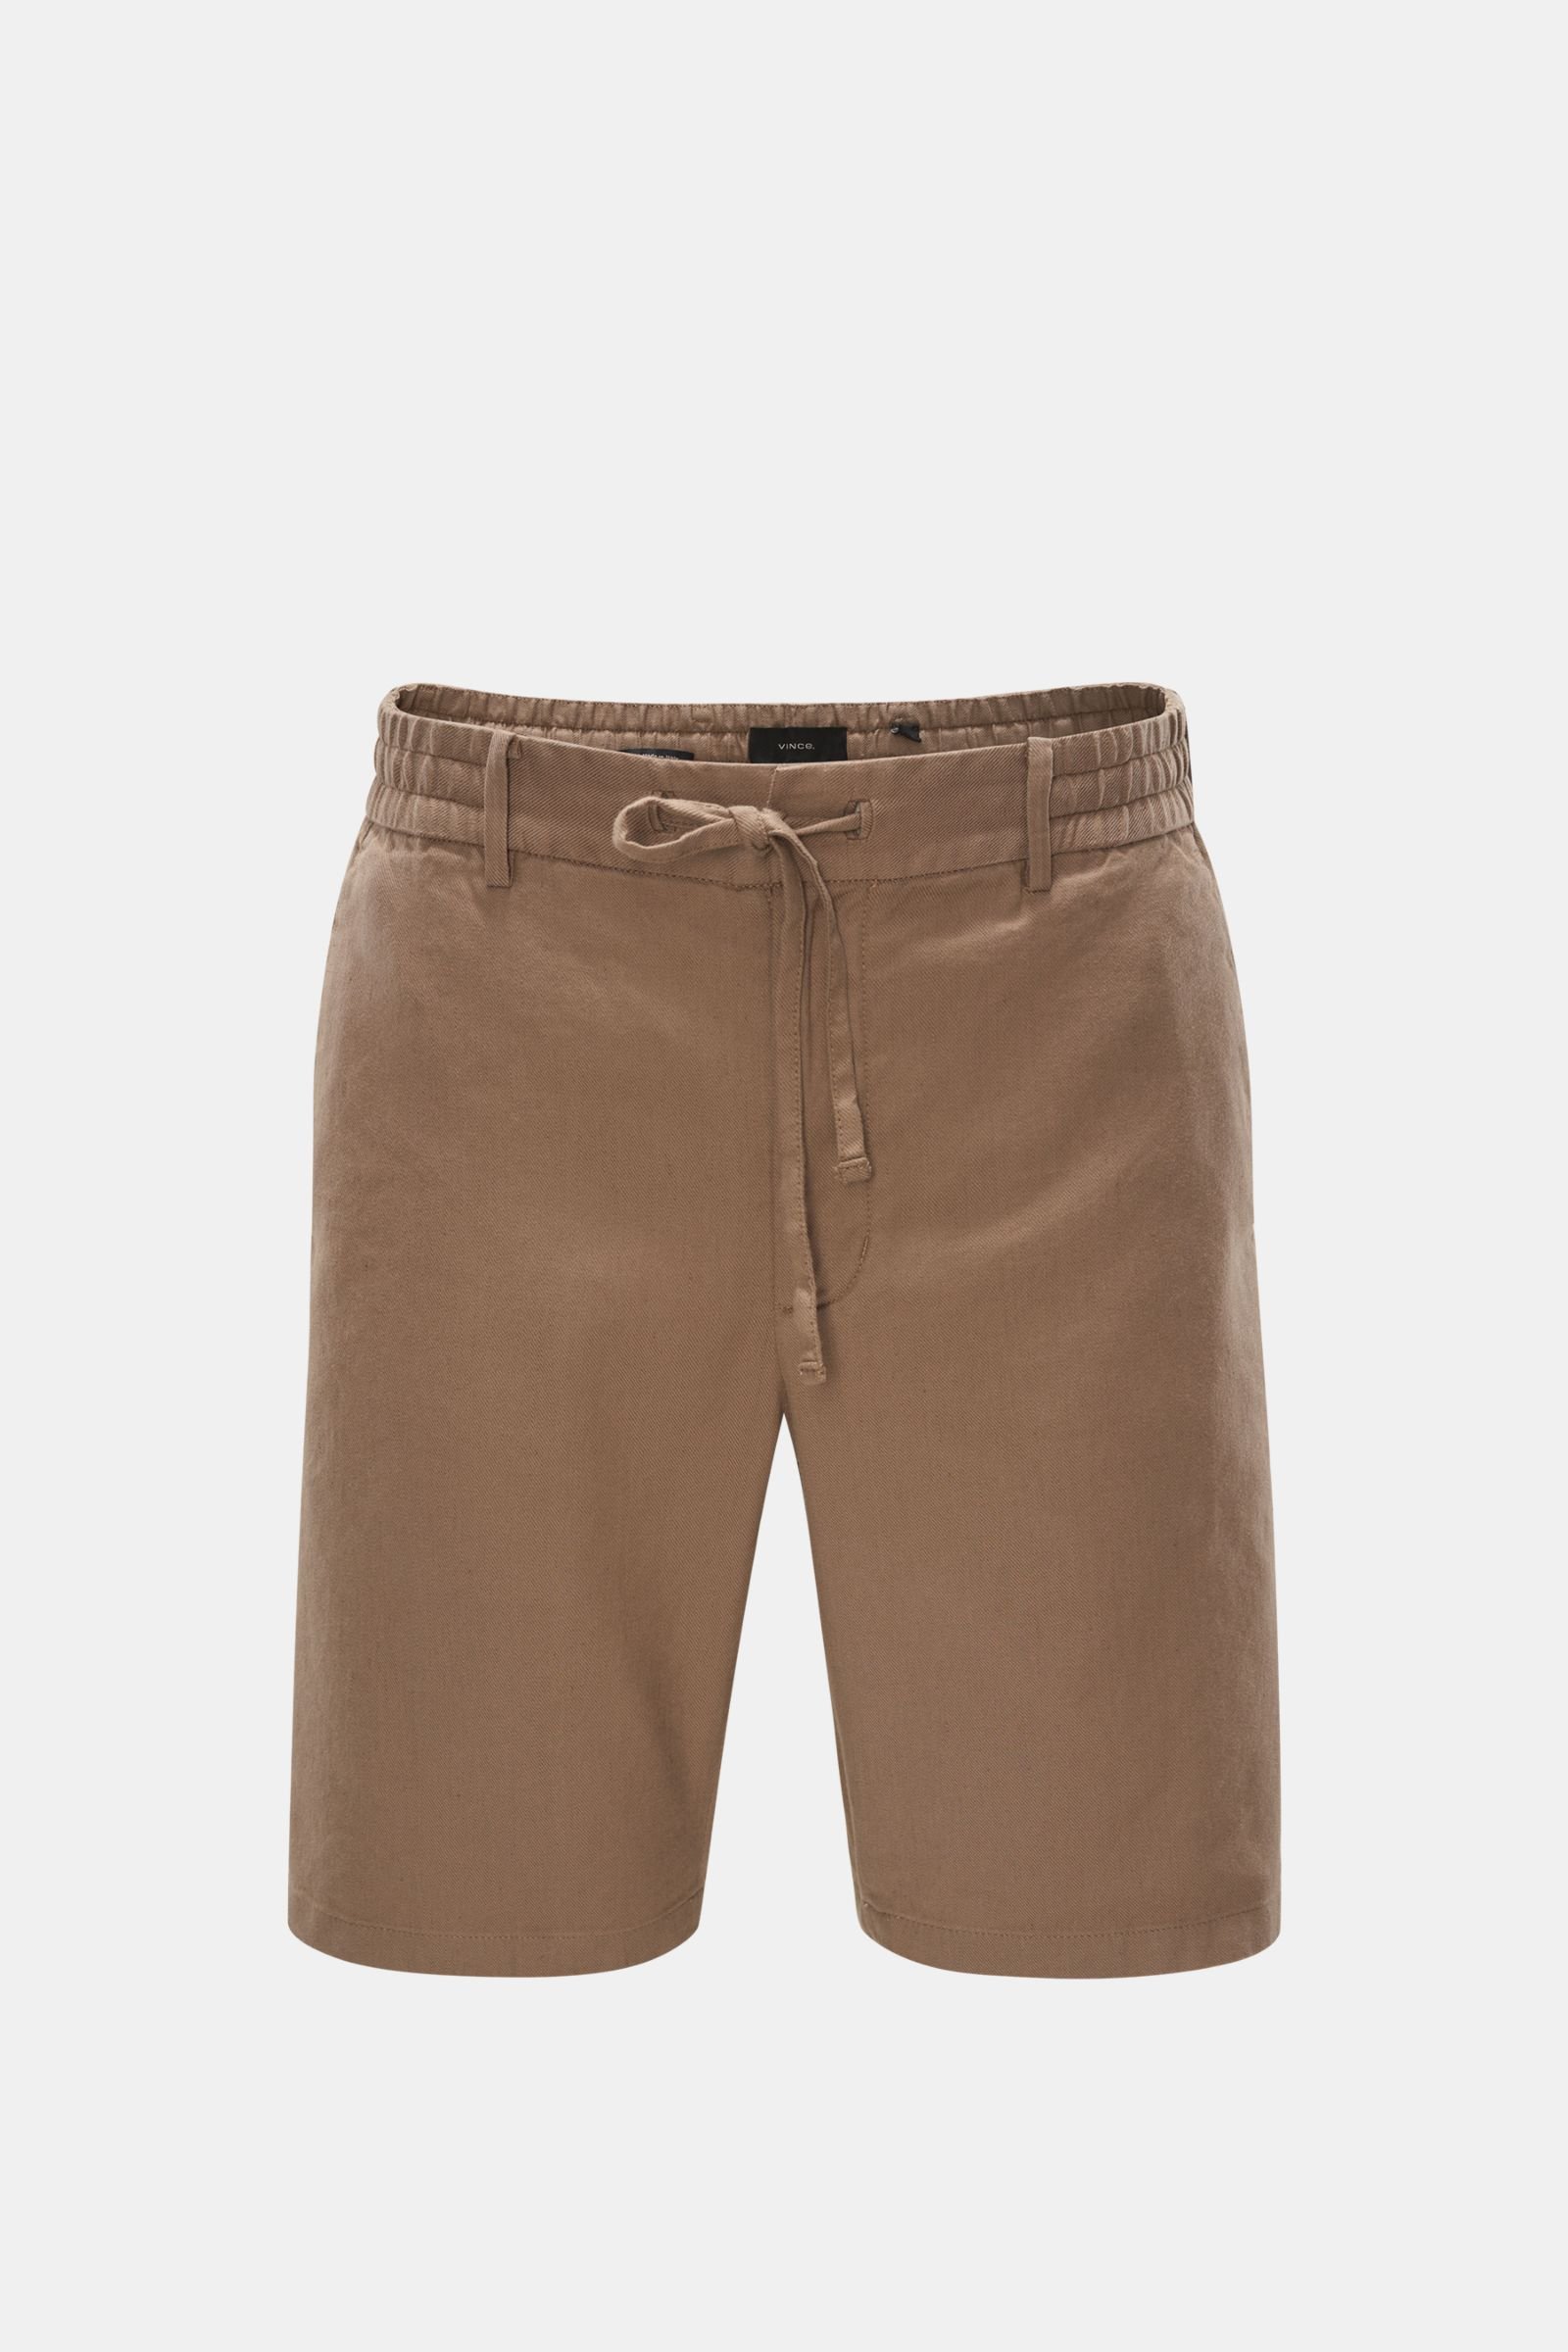 Shorts grey-brown